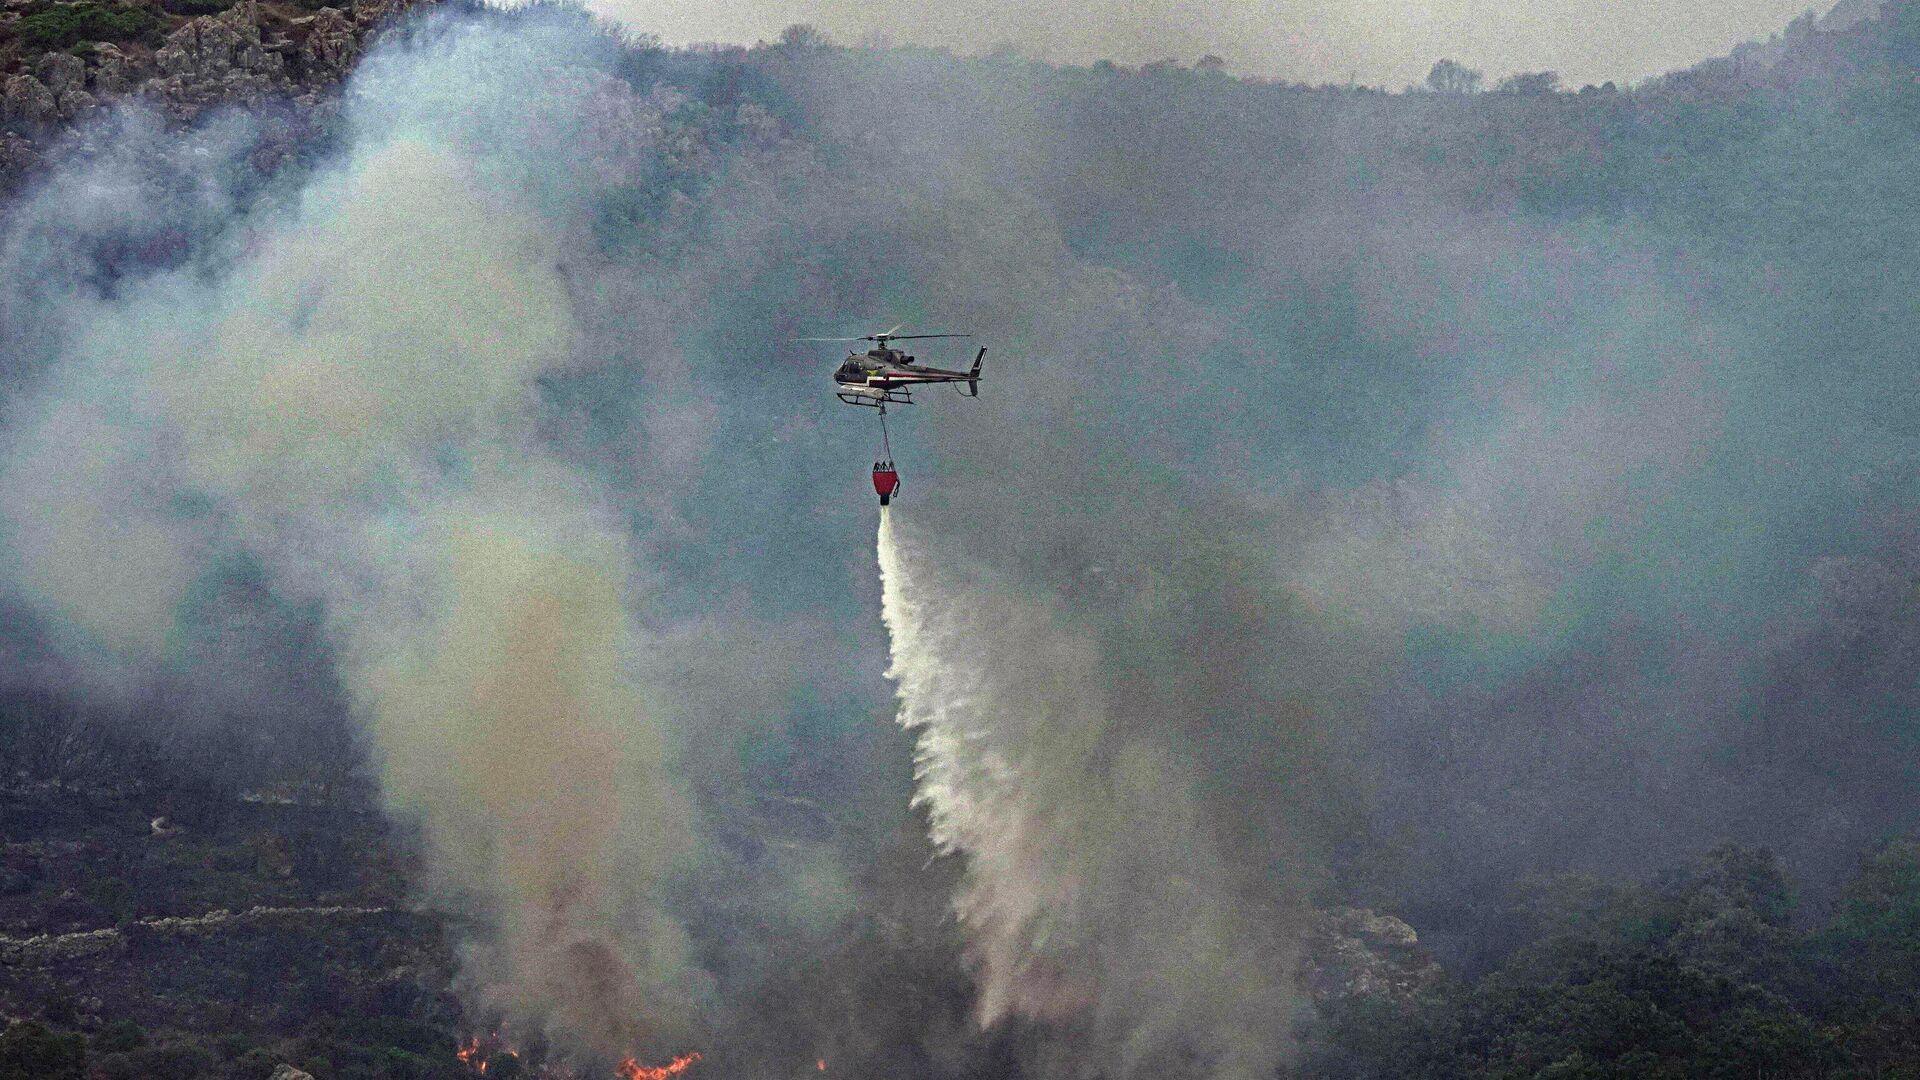 Pomoć u gašenju požara kod Trebinja: Pridružit će se i dva helikoptera MUP-a Srbije